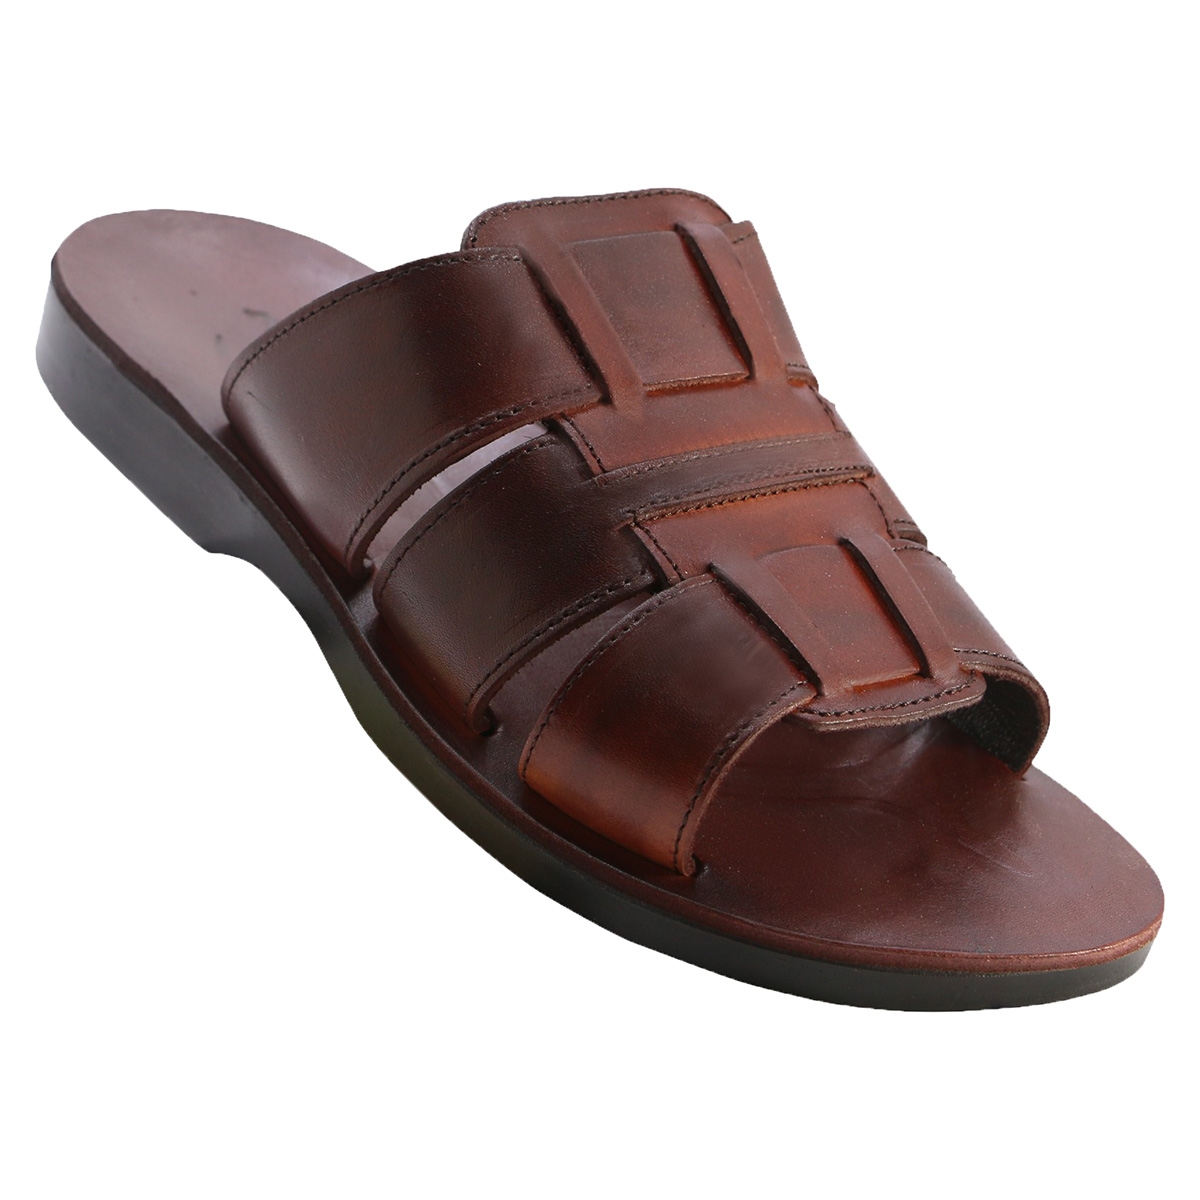 Gershom Handcrafted Leather Jesus Sandals - For Men - 1